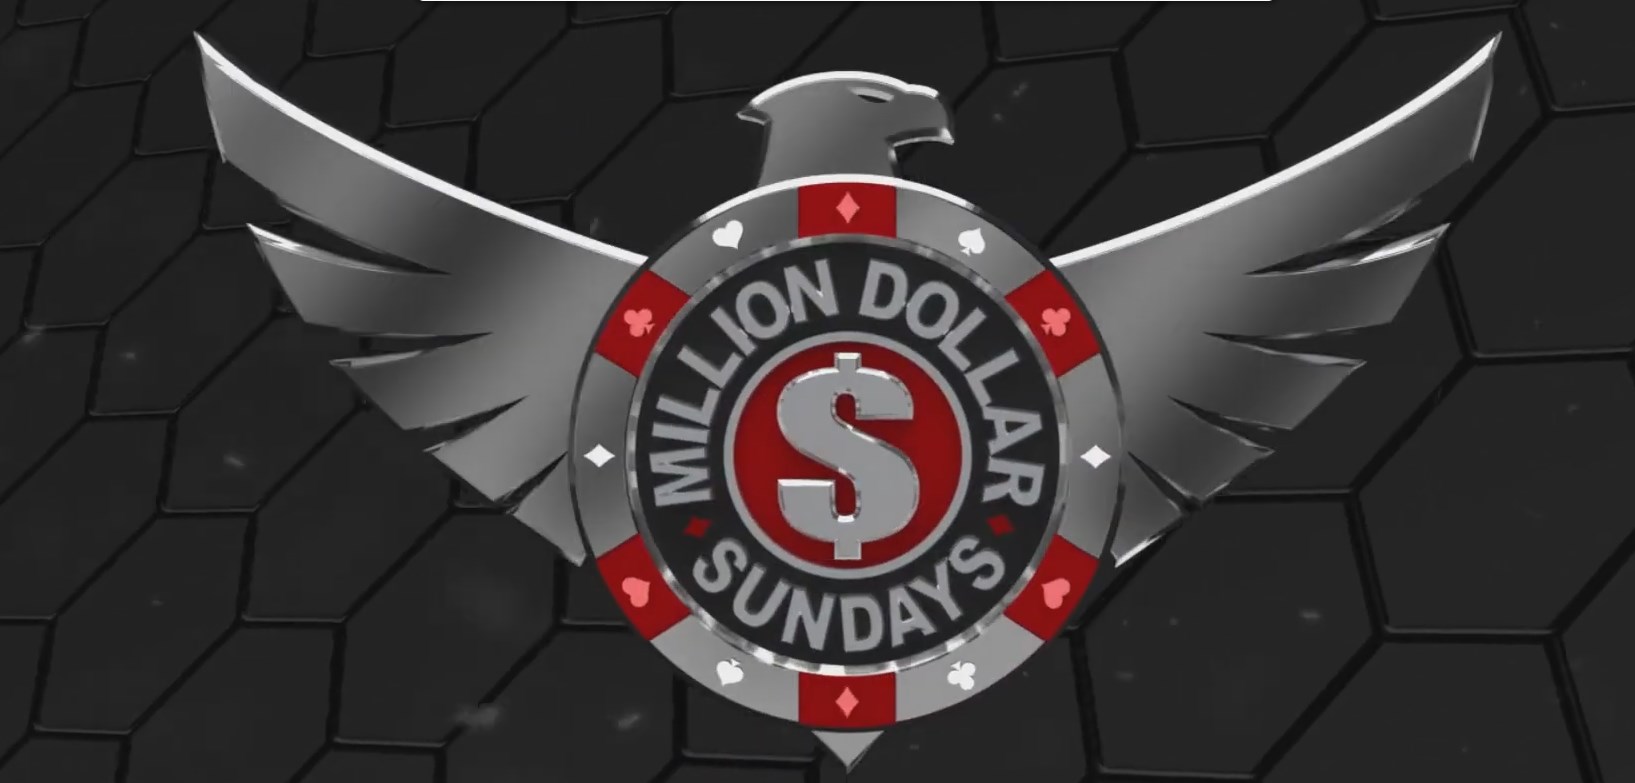 Масштабное обновление Winning Poker: настройка лобби, бекинг через клиент и свой Sunday Million